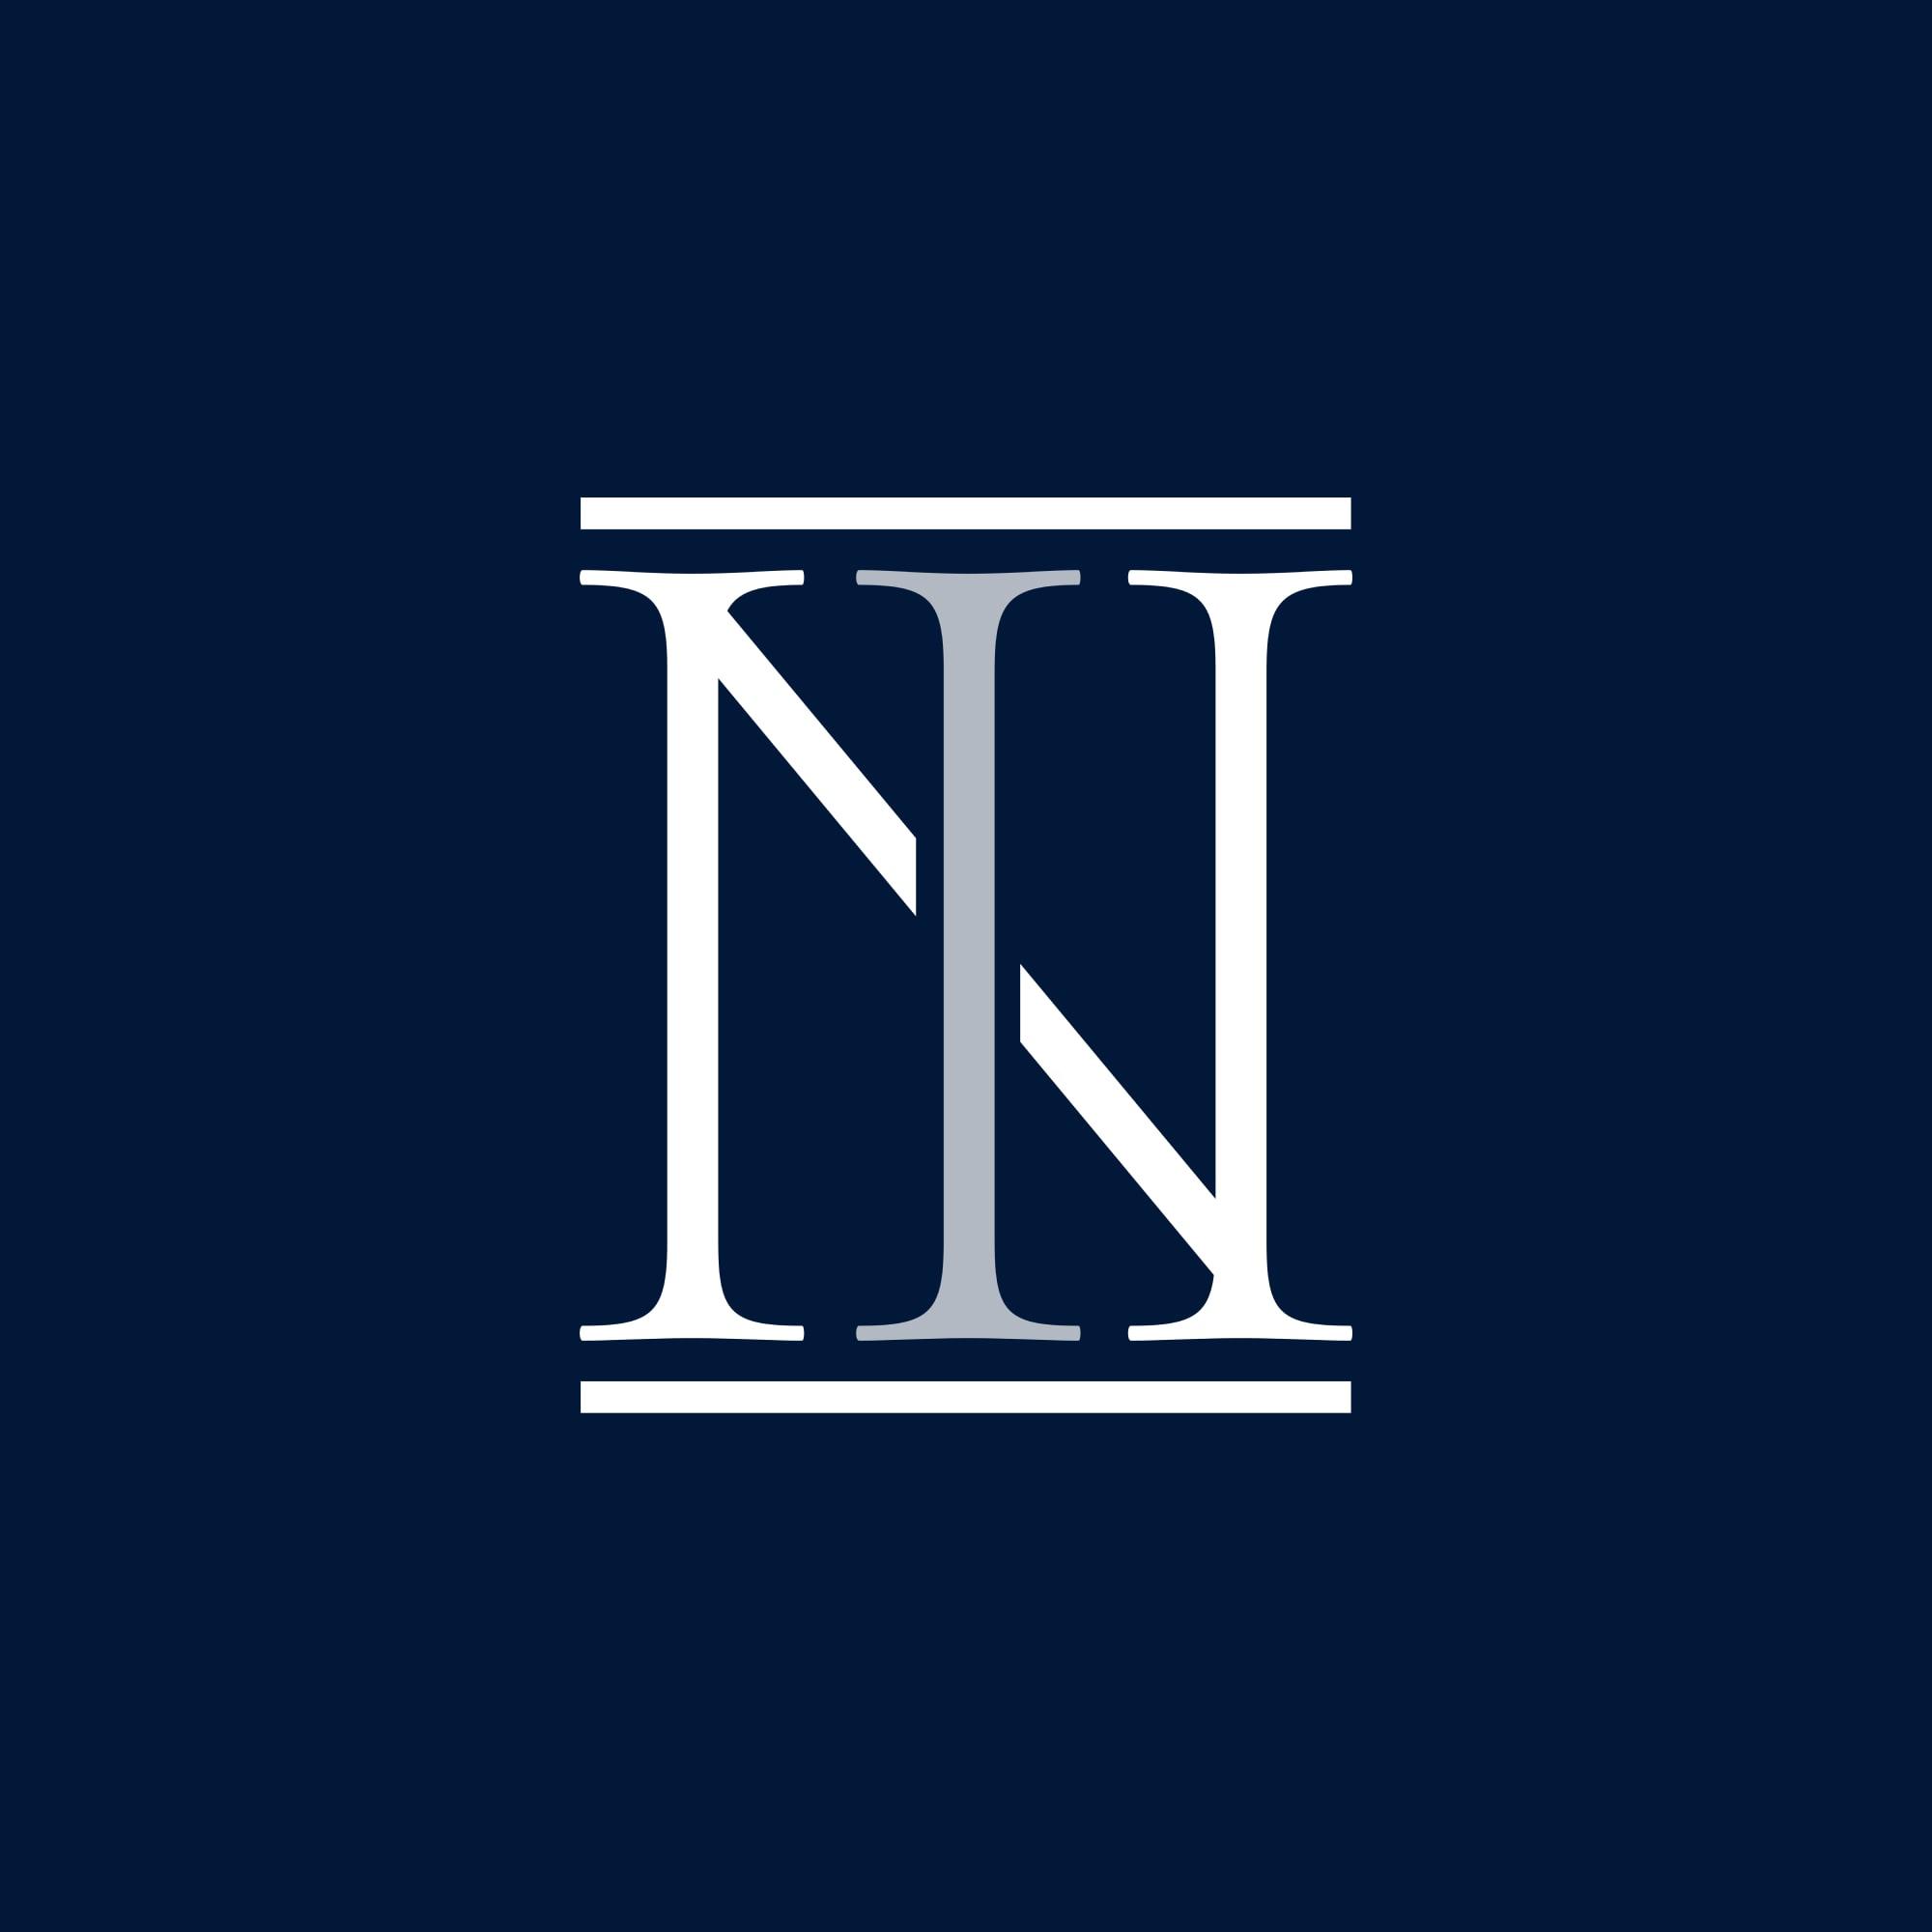 Scuola Legale Nisi - Icon Logo